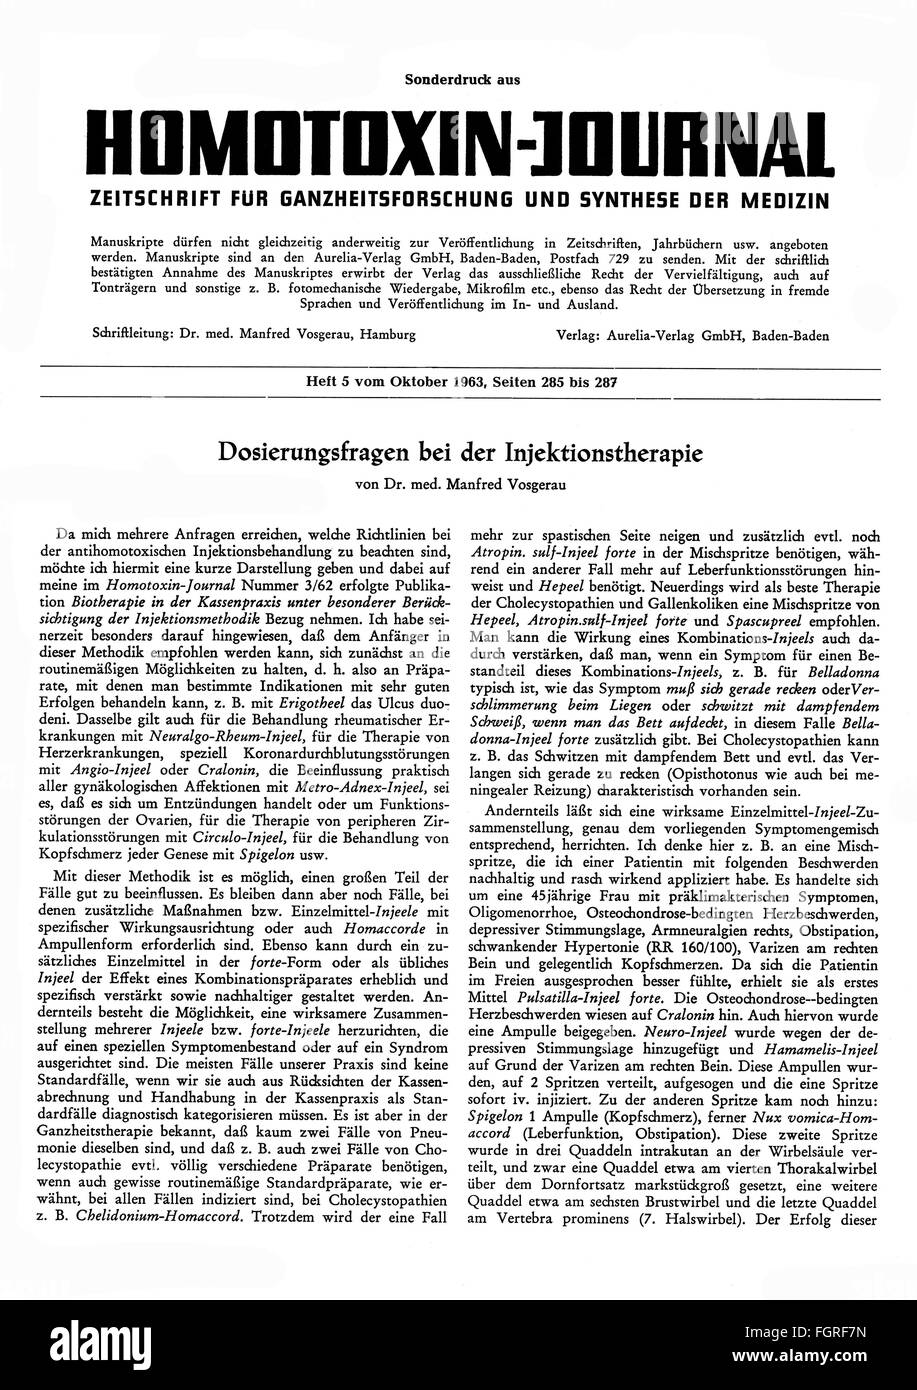 Presse / Medien, Zeitschriften, 'Homotoxin-Journal', Sonderausgabe aus Heft 5, Titelseite, Baden-Baden, Oktober 1963, Zusatzrechte-Clearenzen-nicht verfügbar Stockfoto